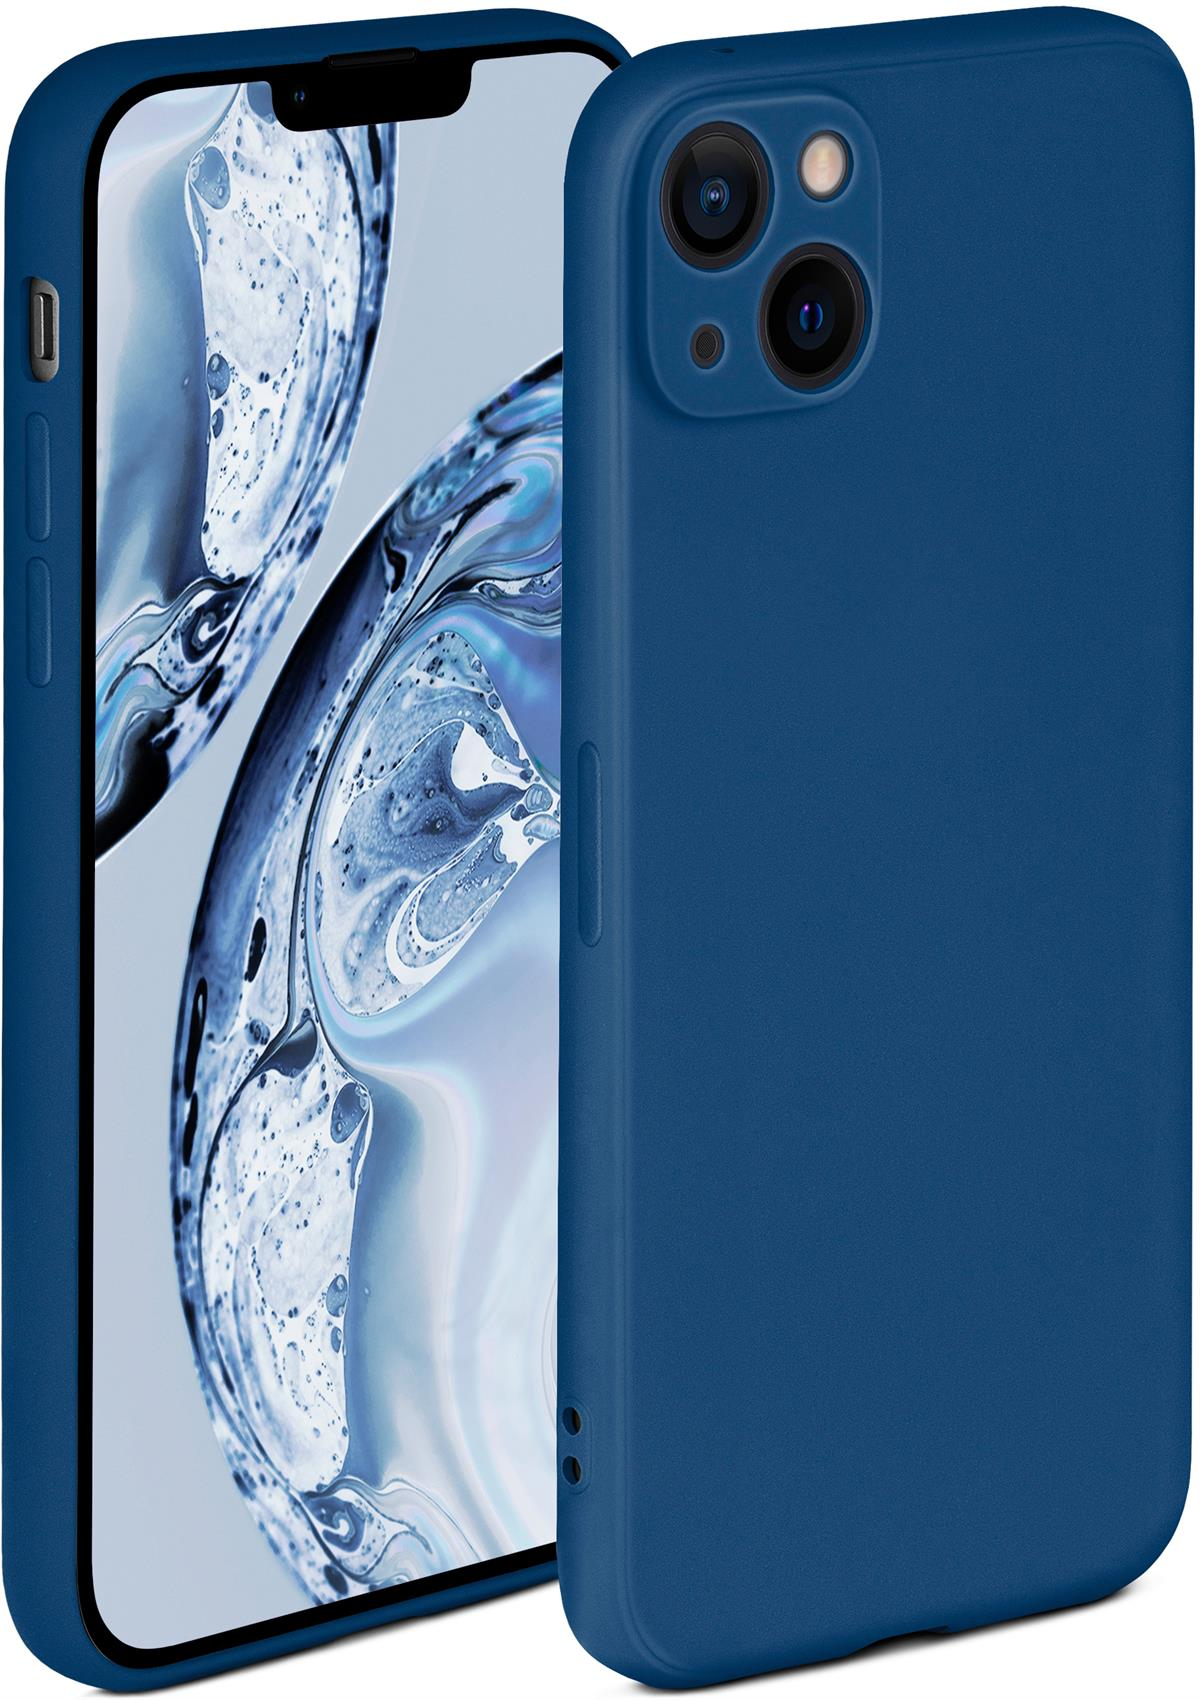 Backcover, ONEFLOW Soft iPhone Case, Apple, 14, Horizontblau